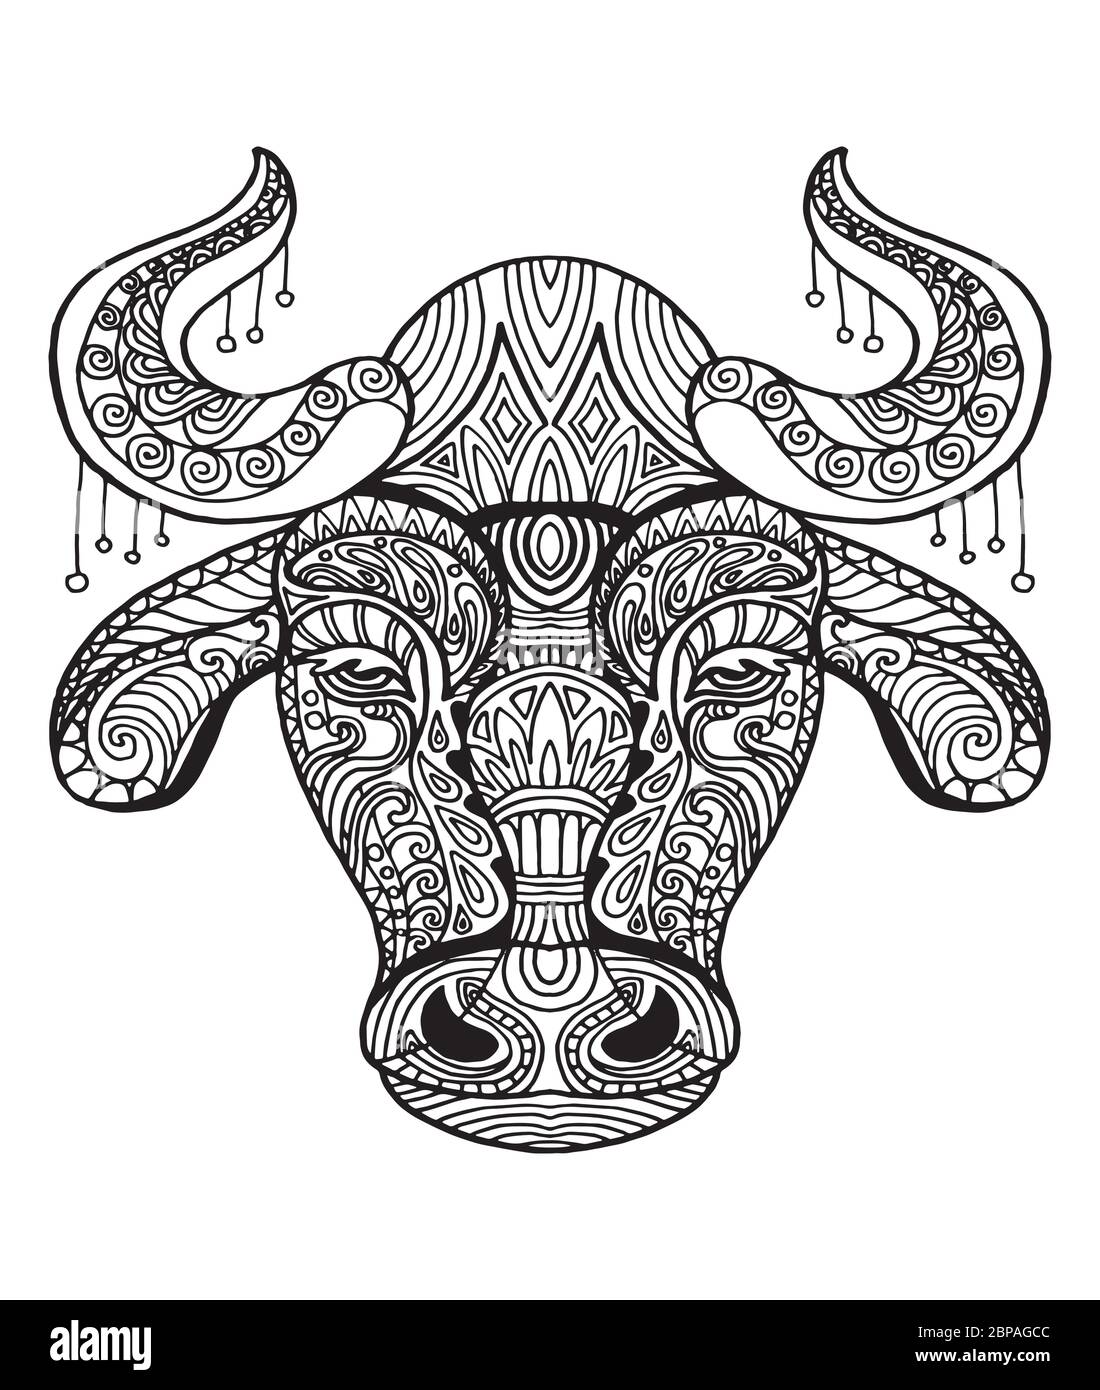 Vettore decorativo doodle testa ornamentale di toro. Illustrazione vettoriale astratta del contorno nero di toro isolato su sfondo bianco. Illustrazione del magazzino Illustrazione Vettoriale